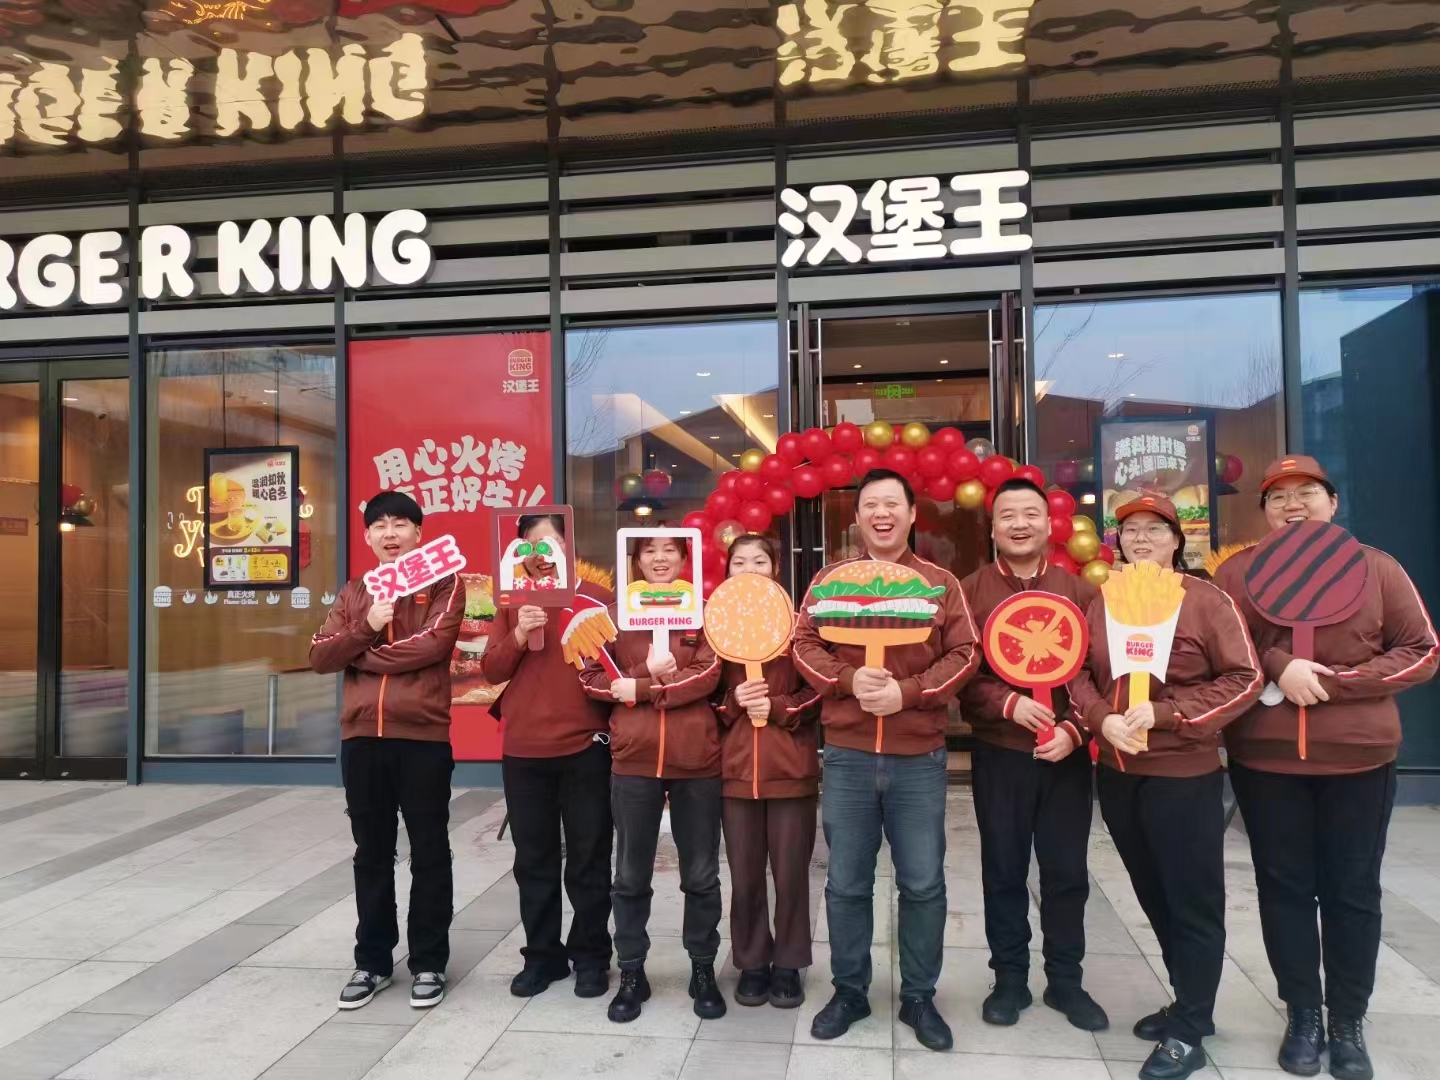 全球大型连锁快餐汉堡王正式入驻开业